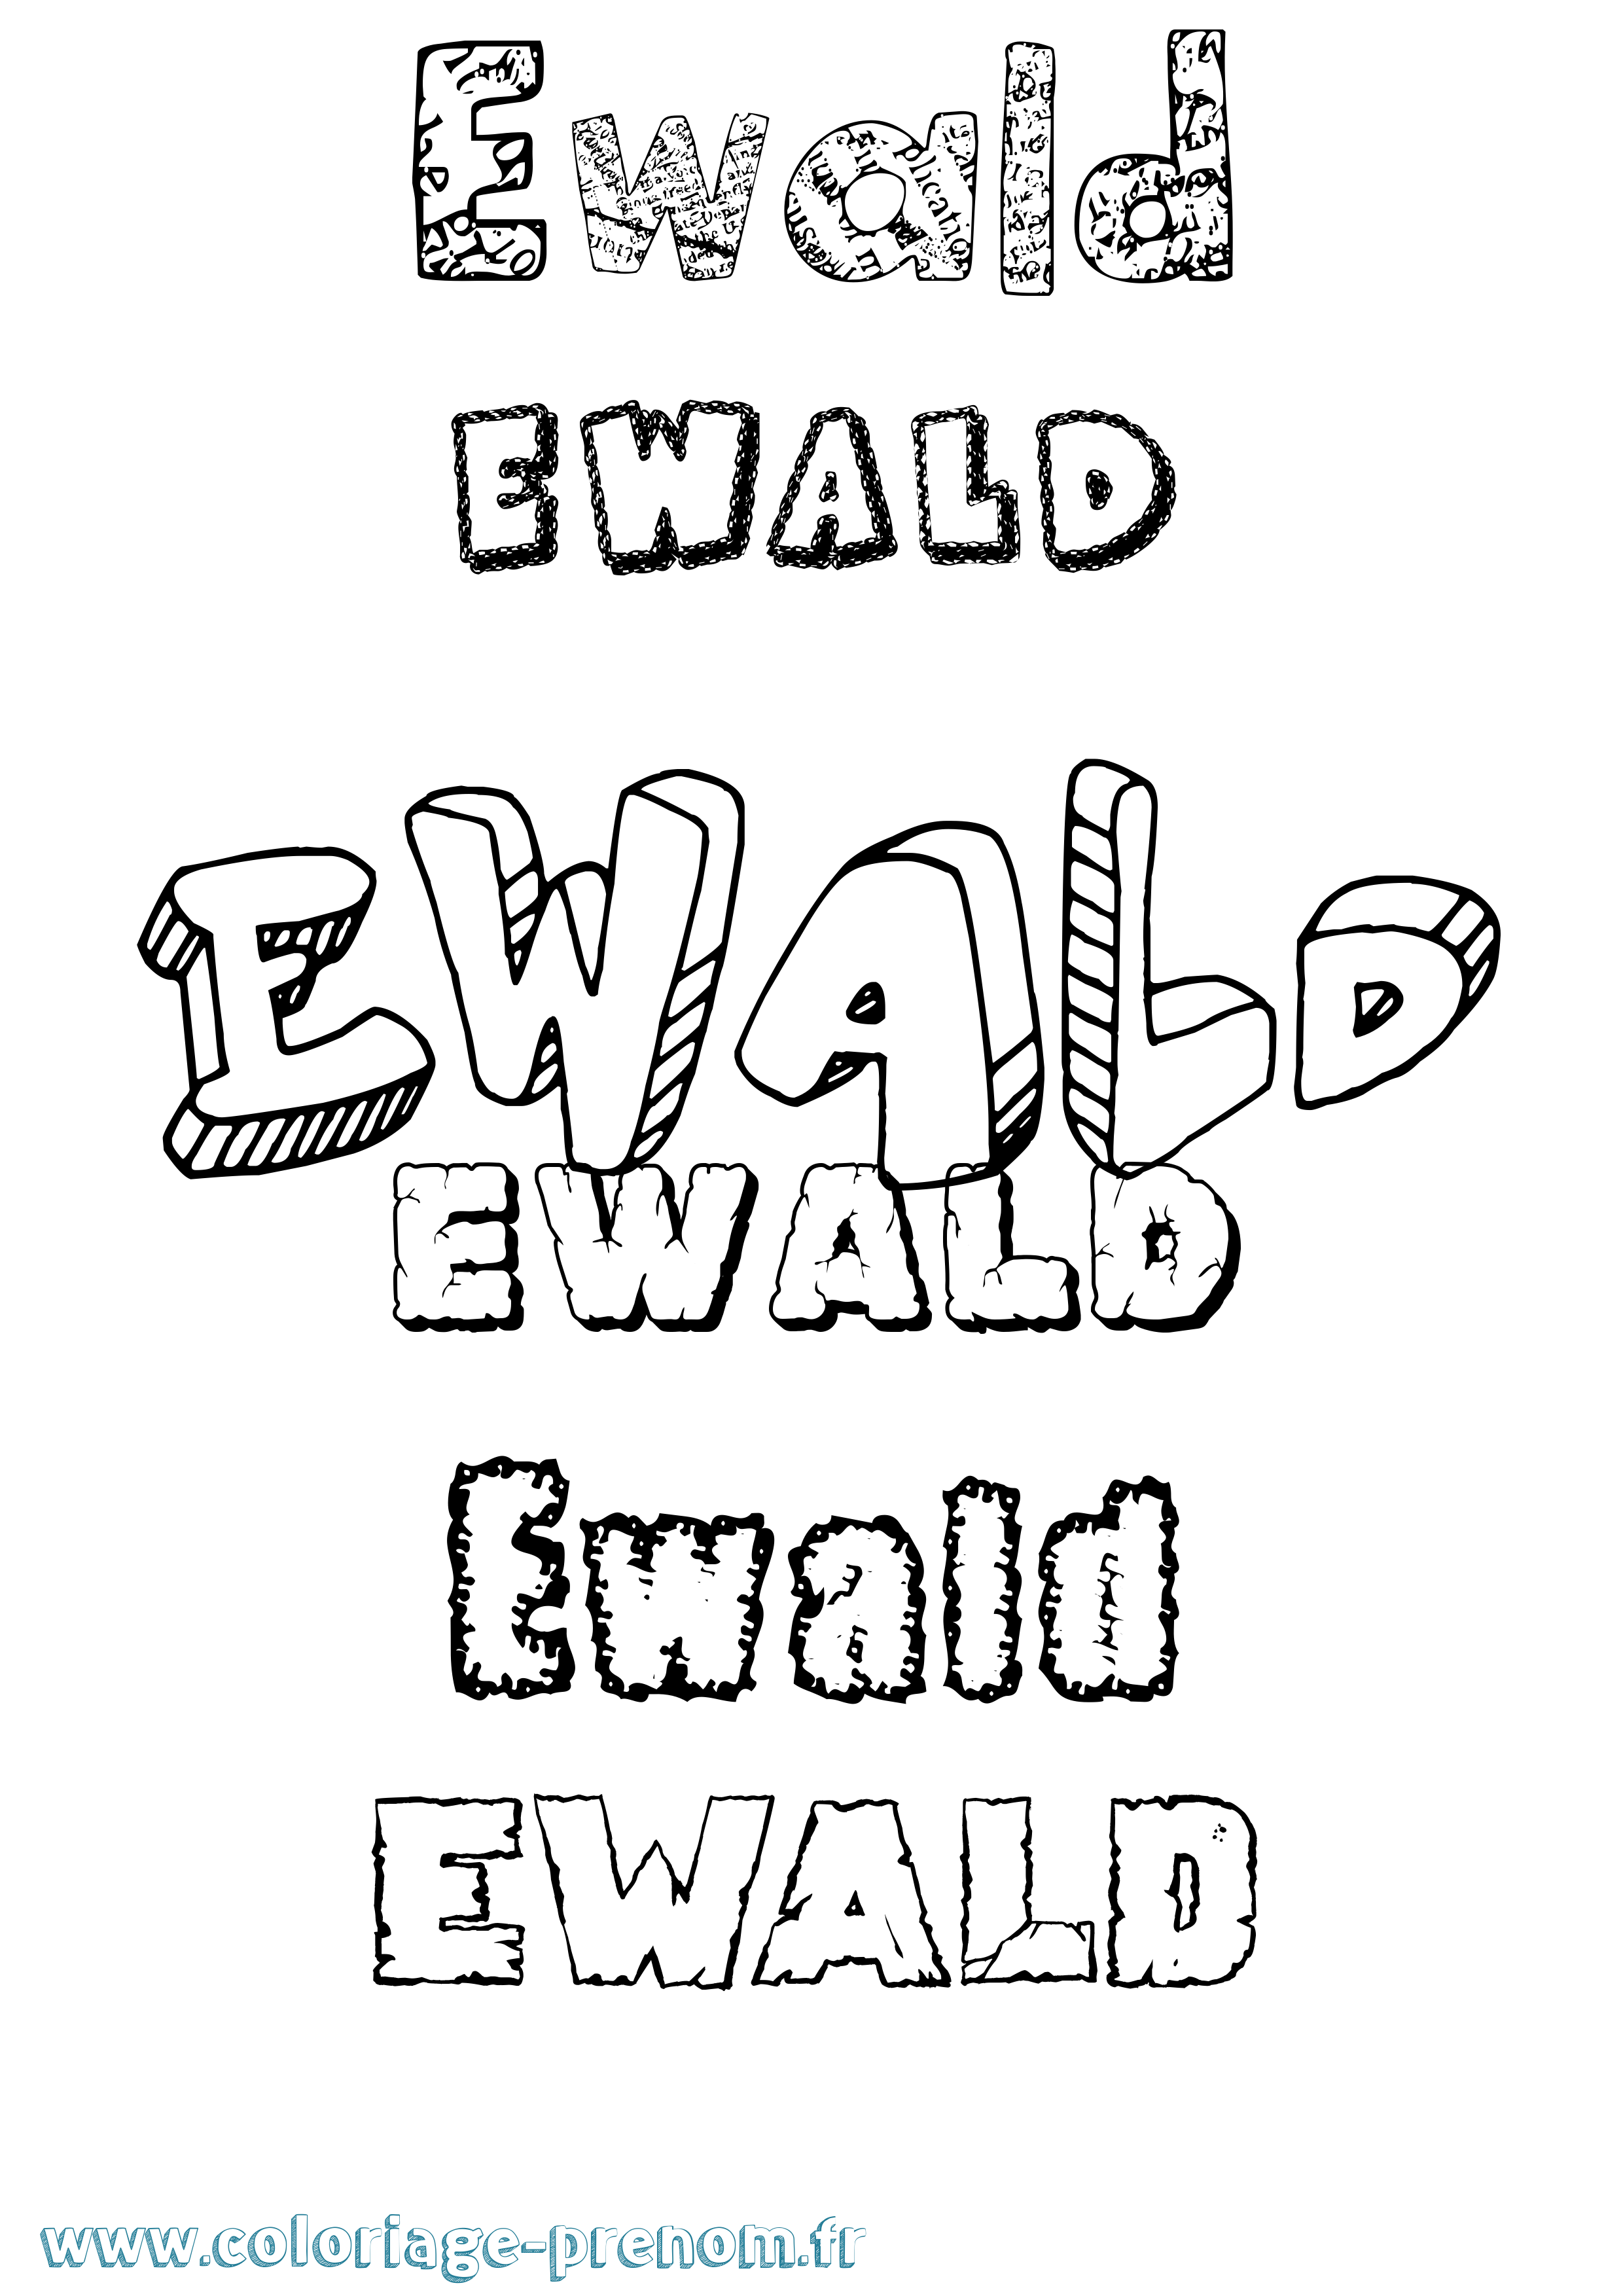 Coloriage prénom Ewald Destructuré